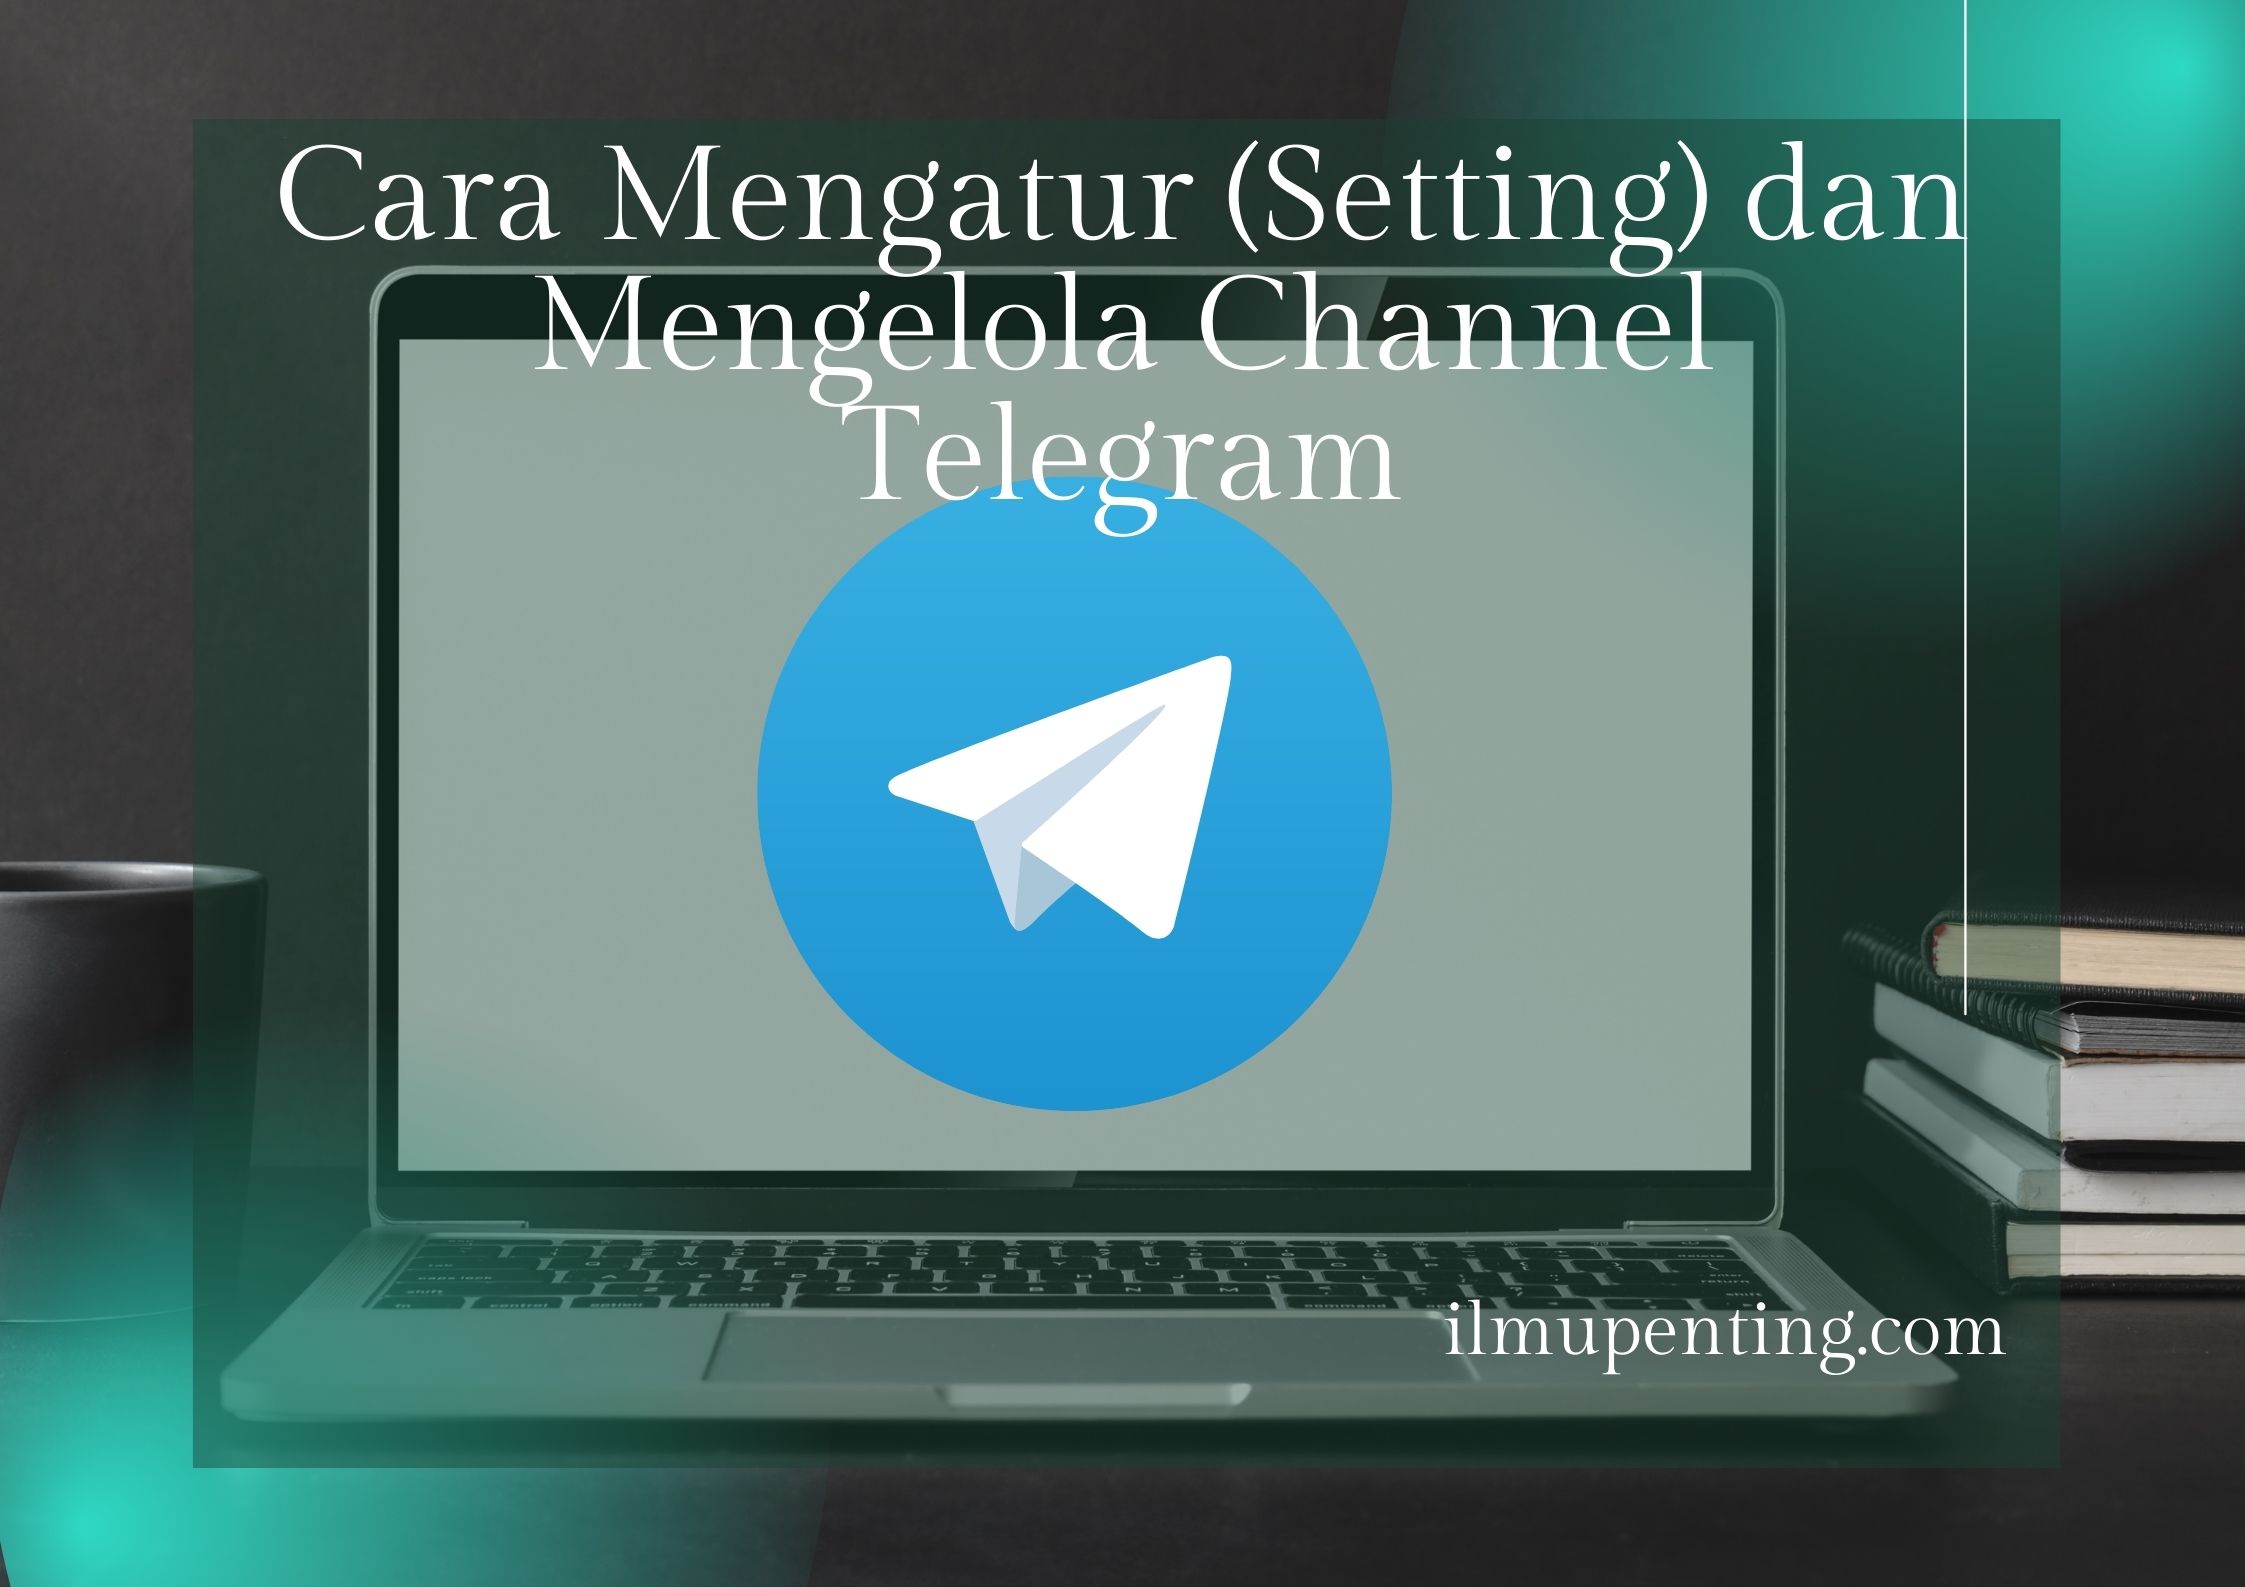 Cara Mengatur (Setting) dan Mengelola Channel Telegram